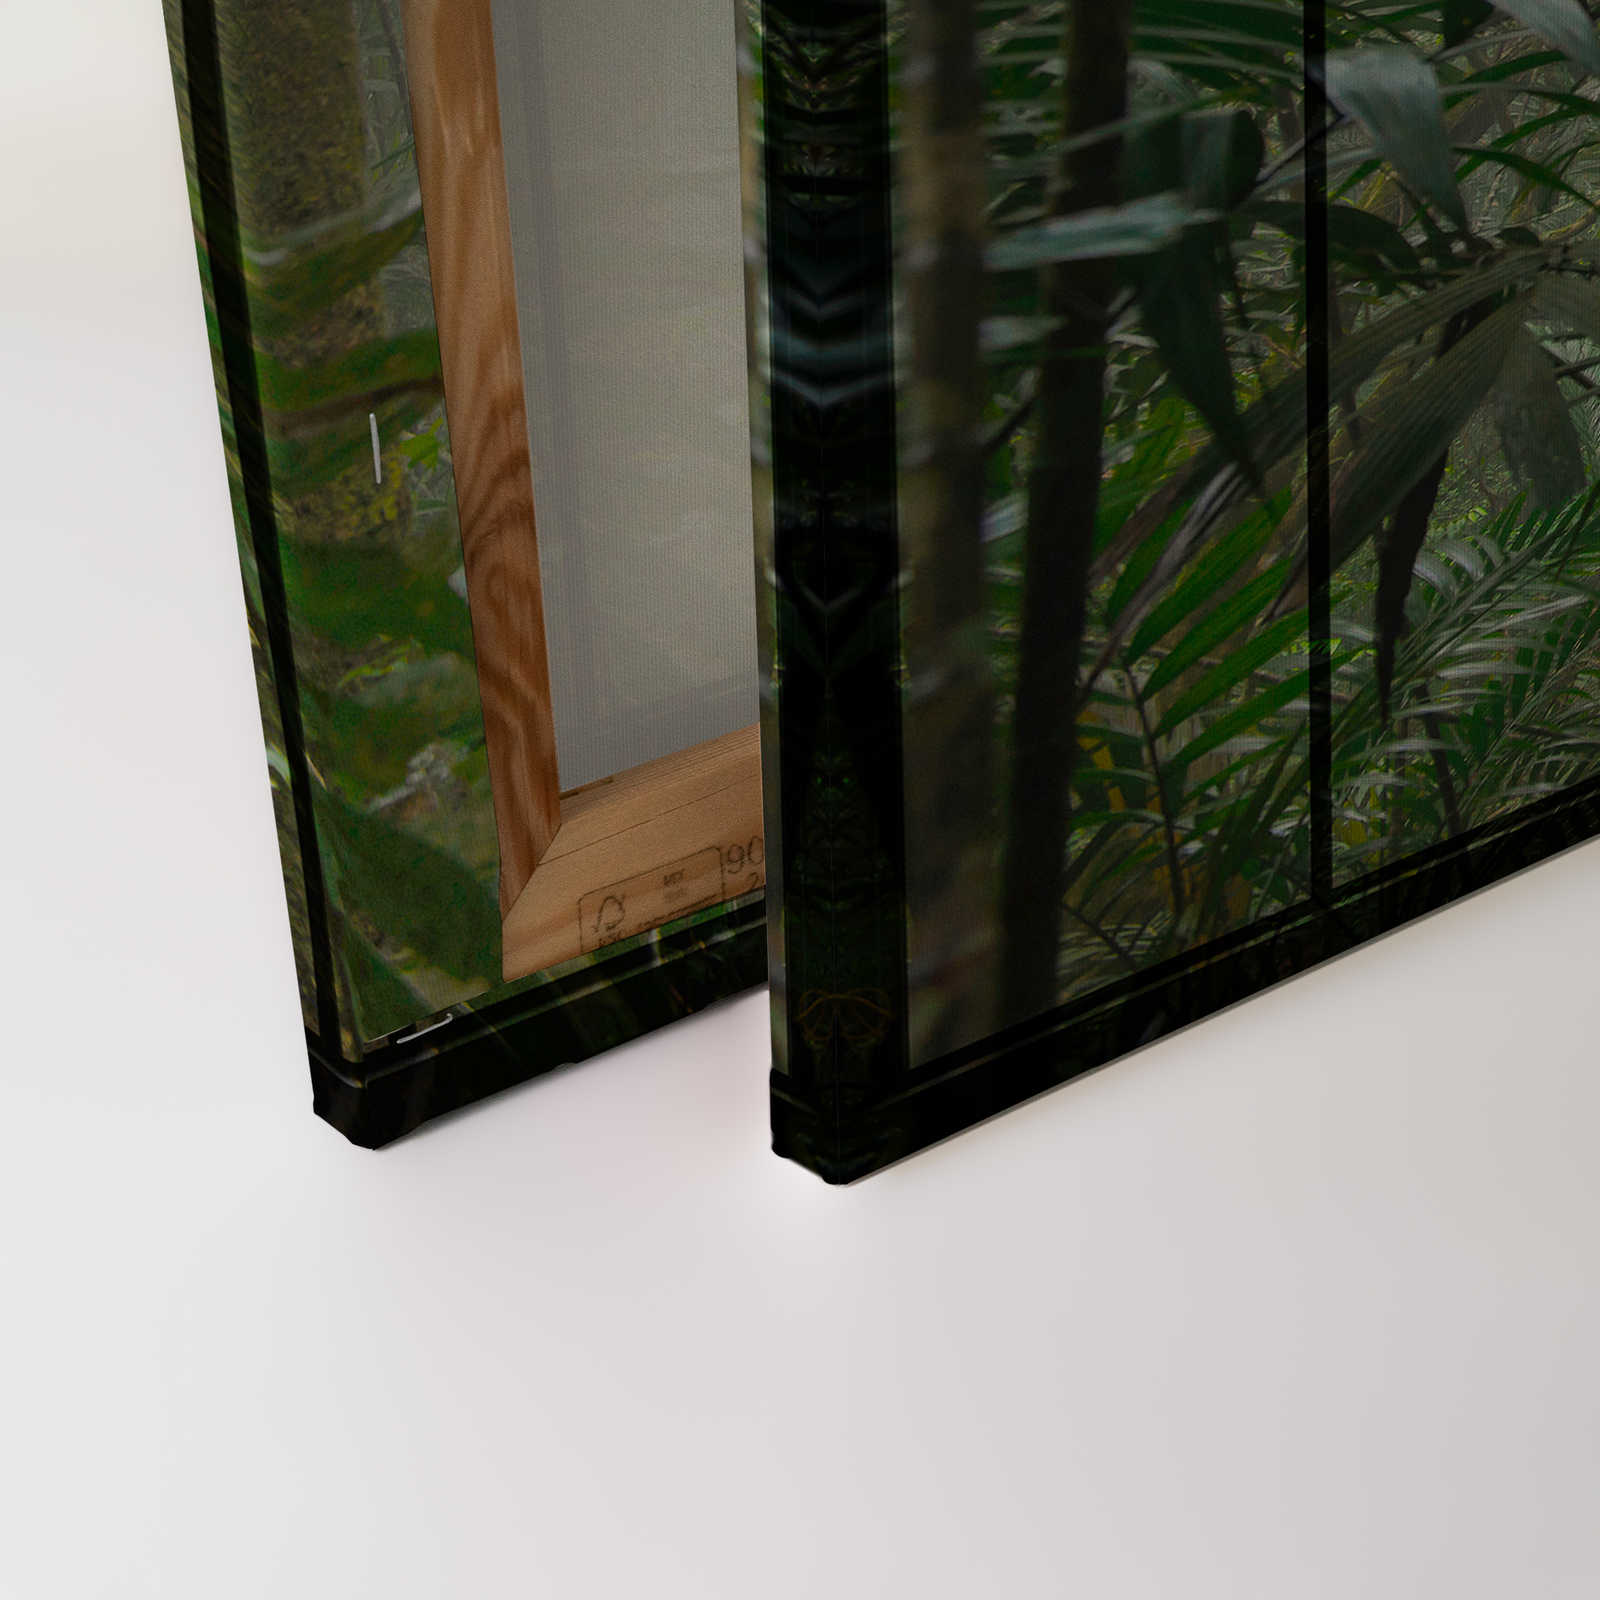             Rainforest 1 - Loft raam canvas schilderij met uitzicht op de jungle - 0.90 m x 0.60 m
        